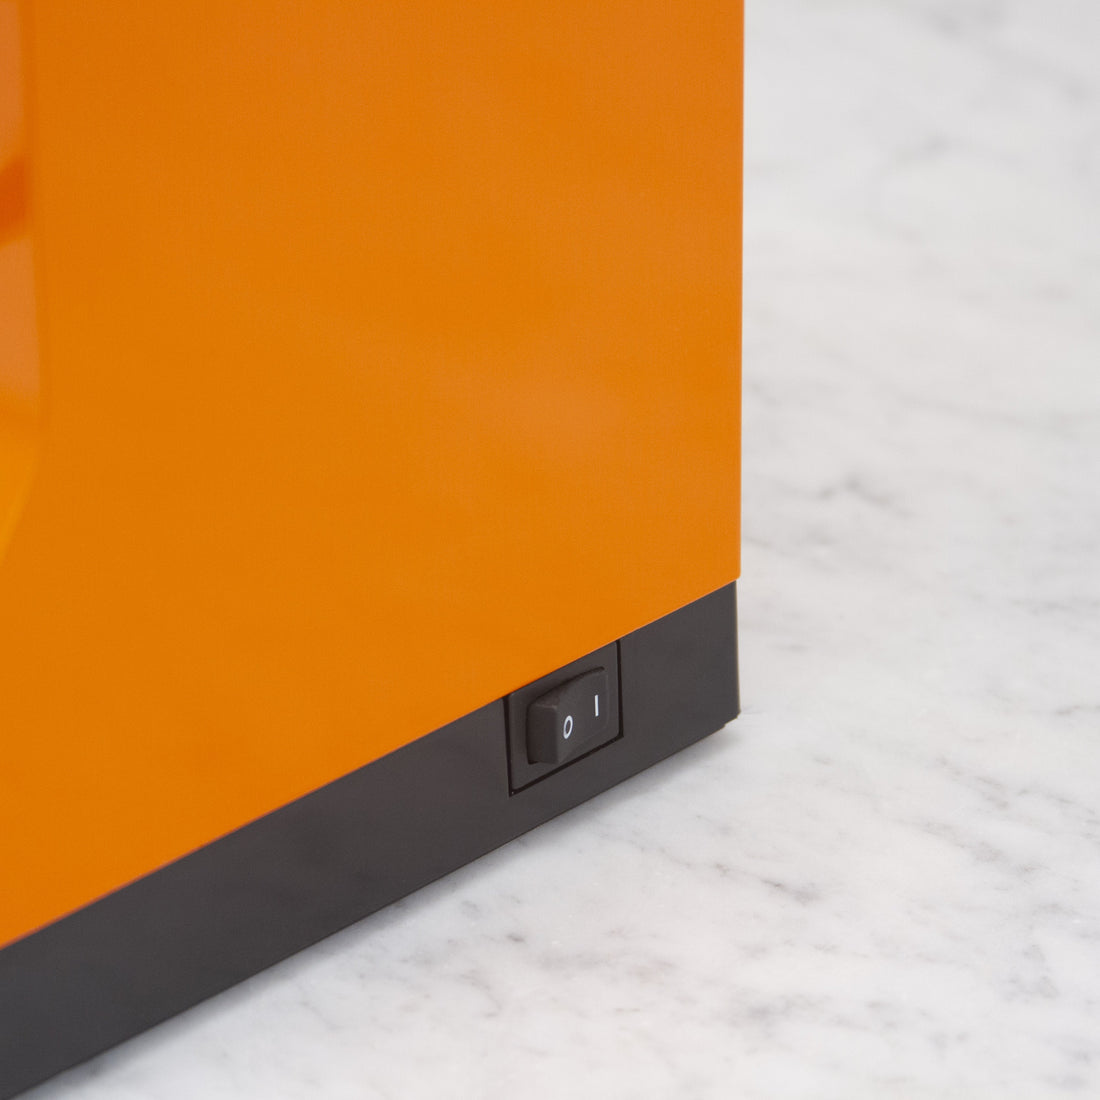 Eureka Mignon Specialita orange power switch || Orange